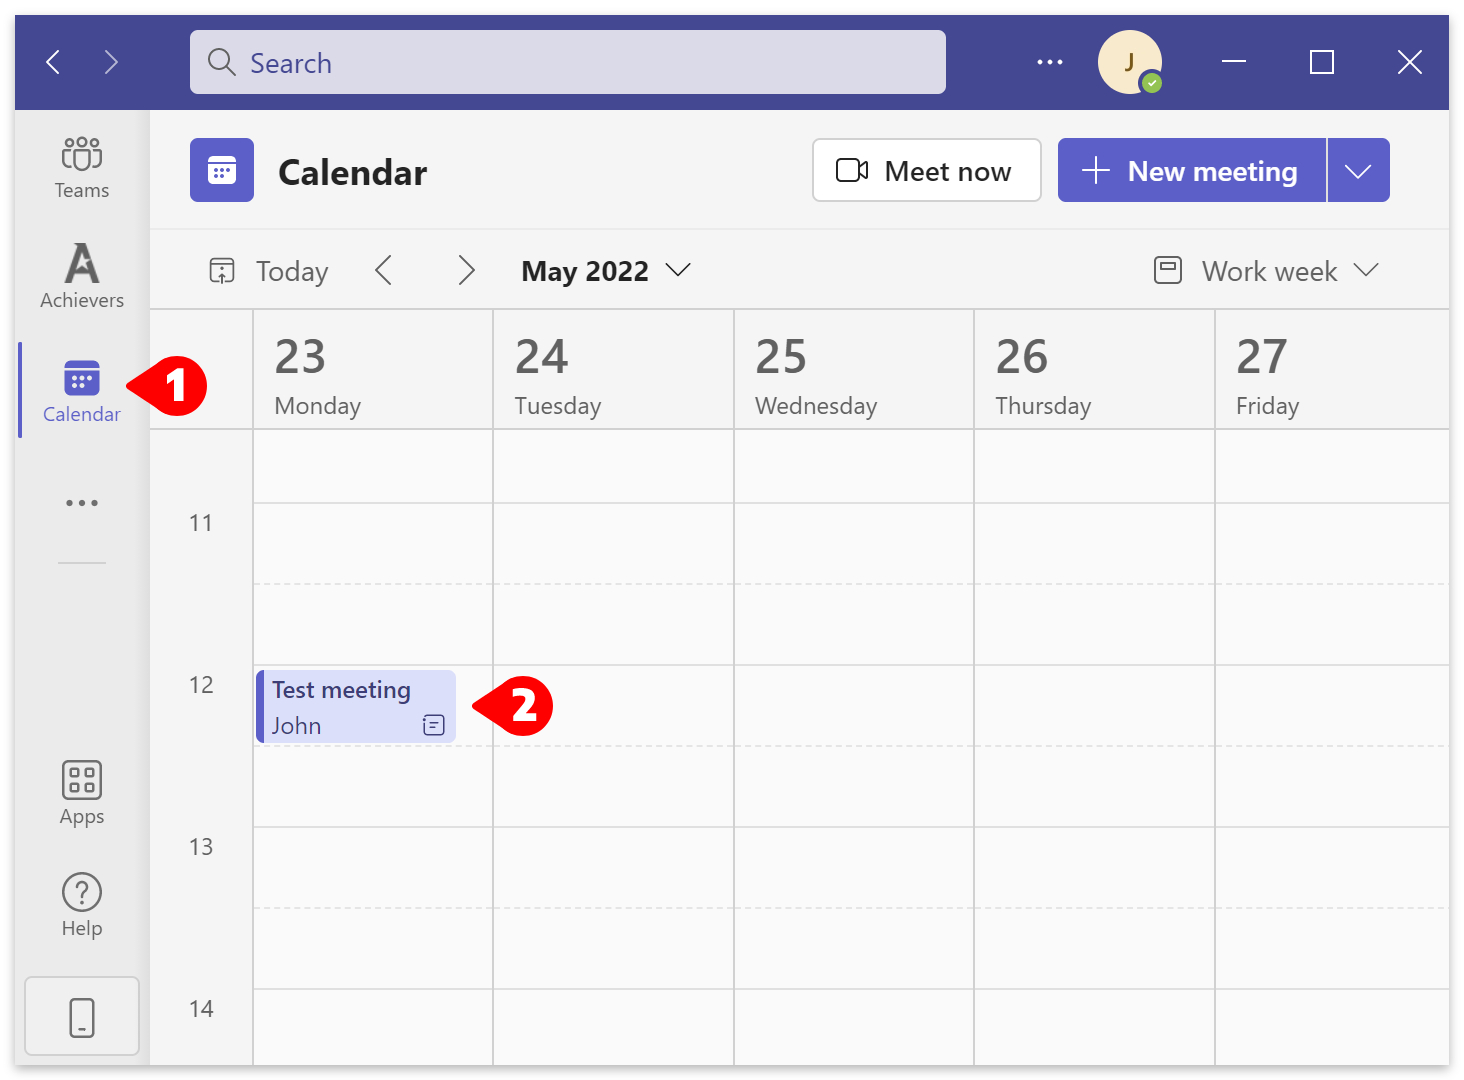 Calendar > your meeting.